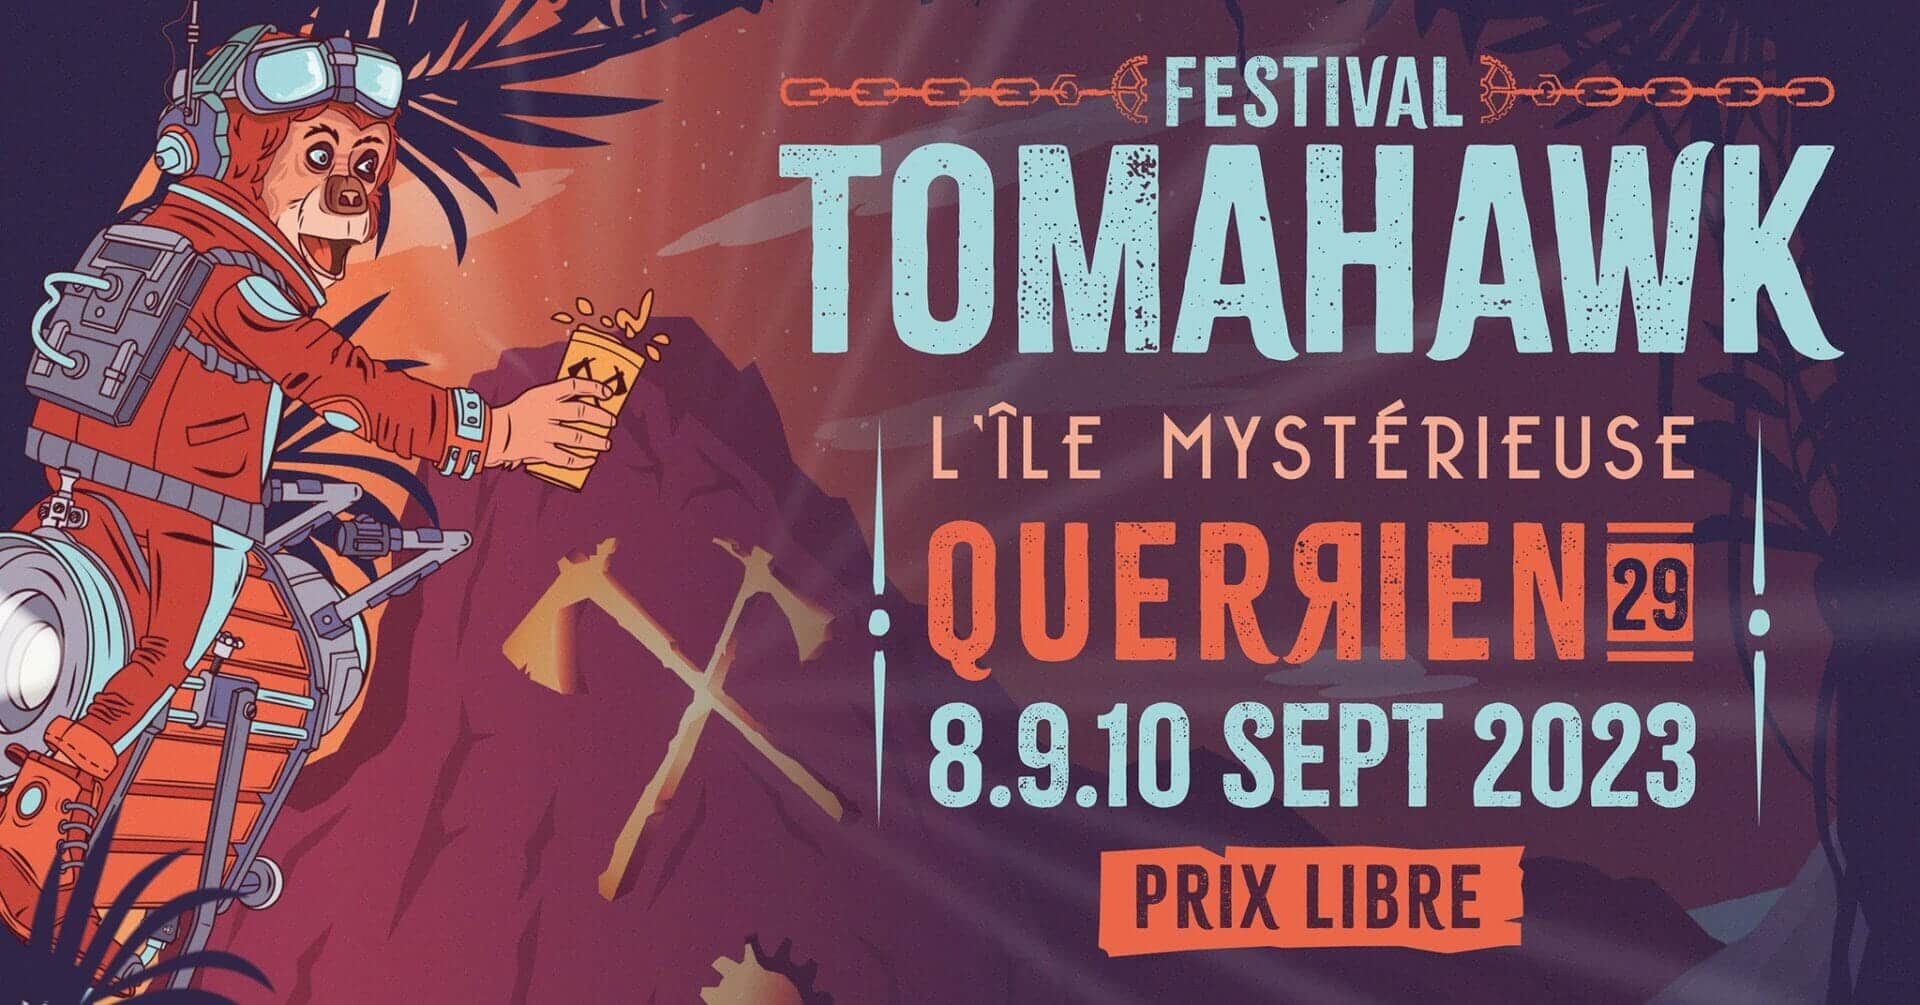 Festival Tomahawk, les 8, 9 et 10 septembre 2023 à Querrien (29)